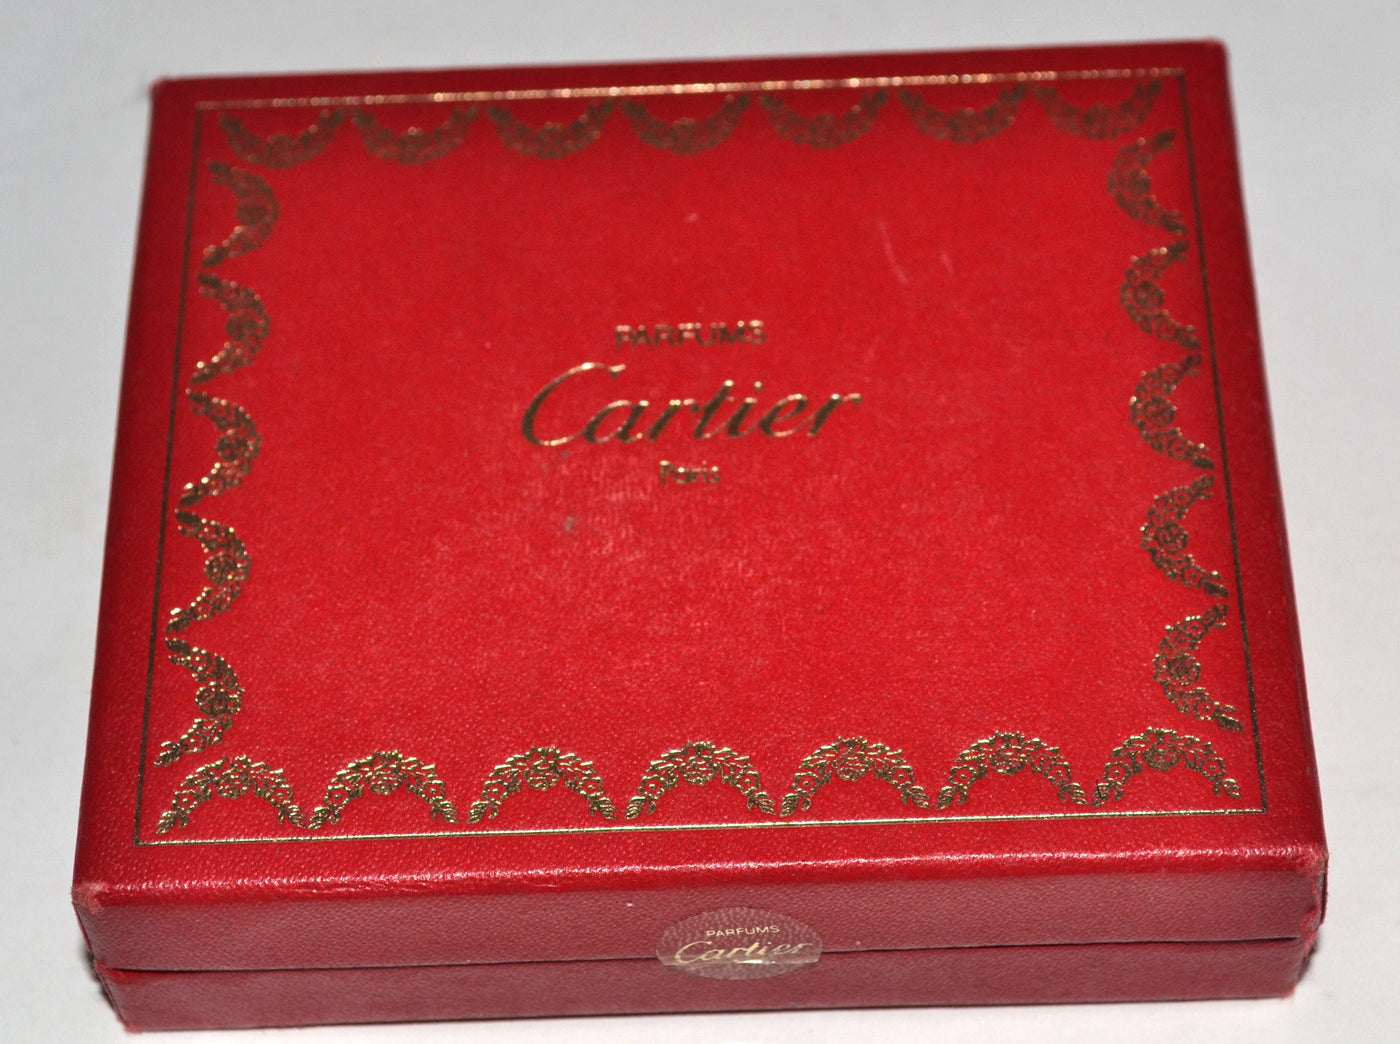 Must de Cartier Parfum & Eau De Toilette Set